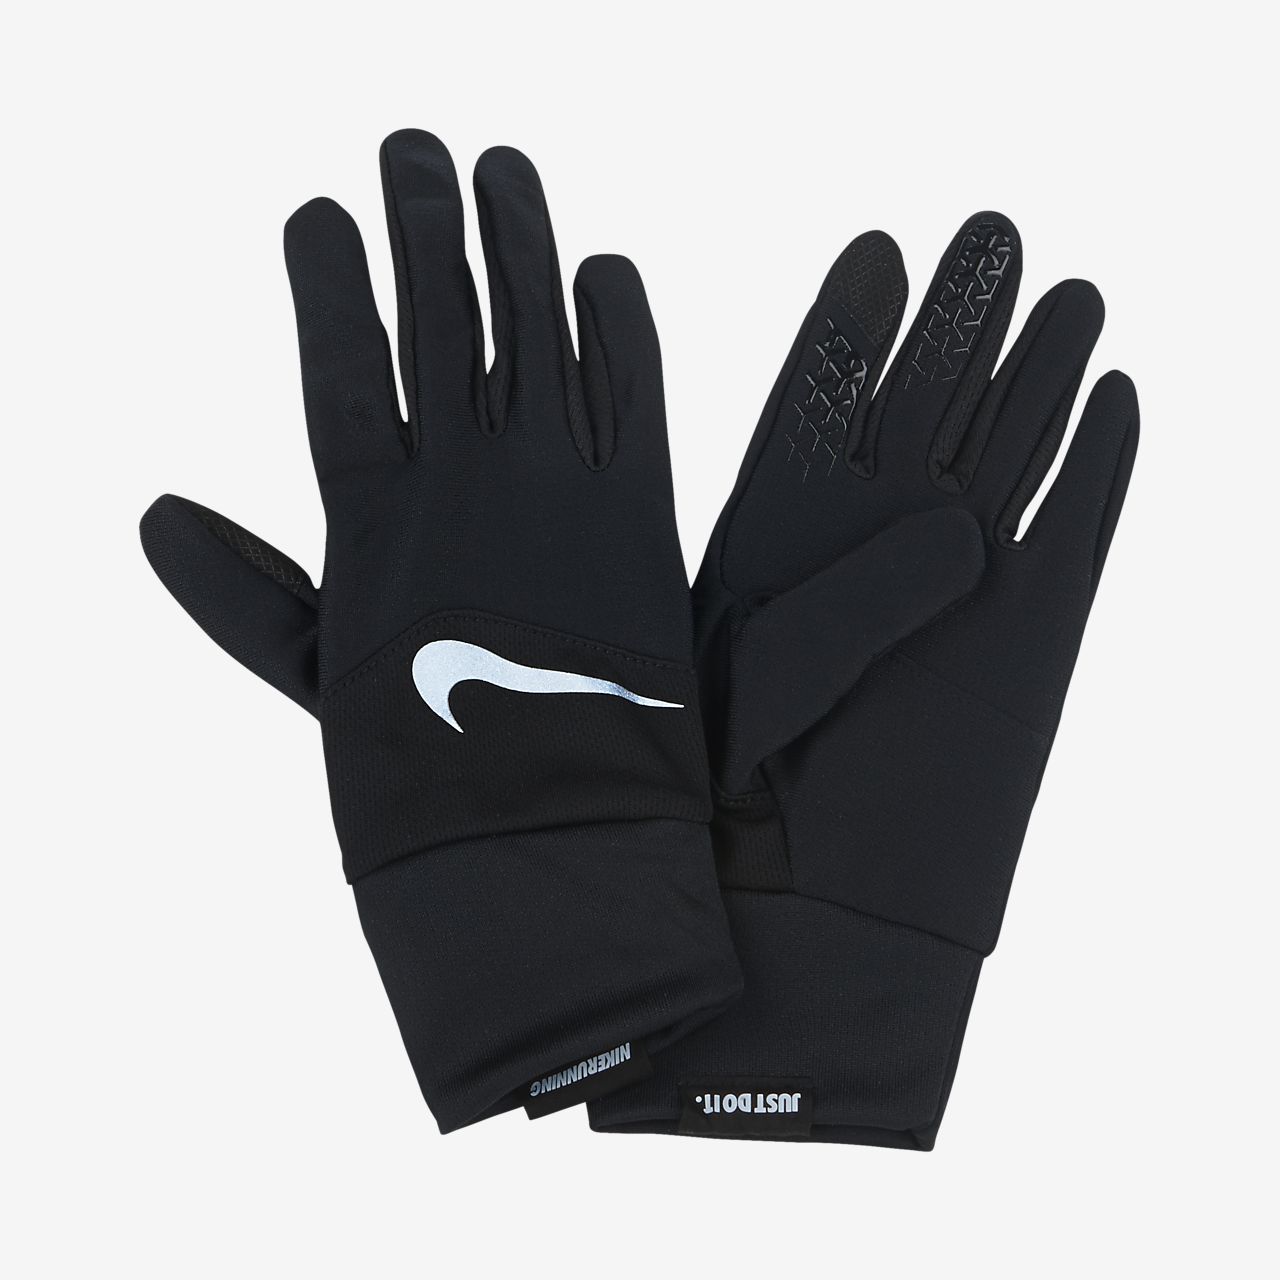 2 Running gloves 28